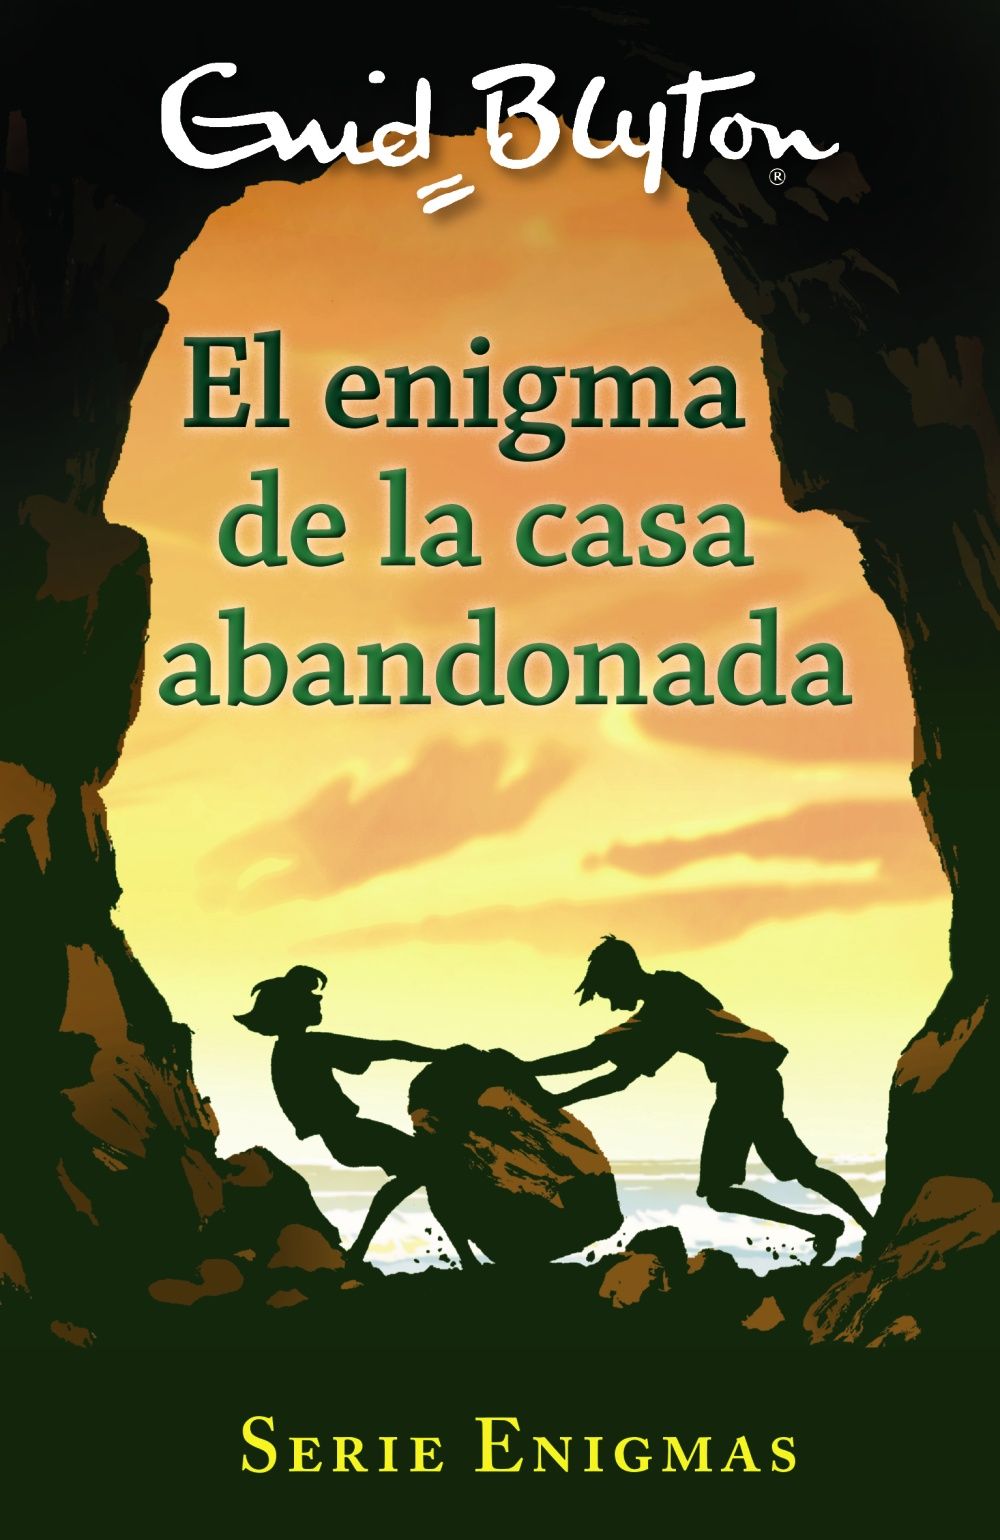 SERIE ENIGMAS, 1. EL ENIGMA DE LA CASA ABANDONADA. 